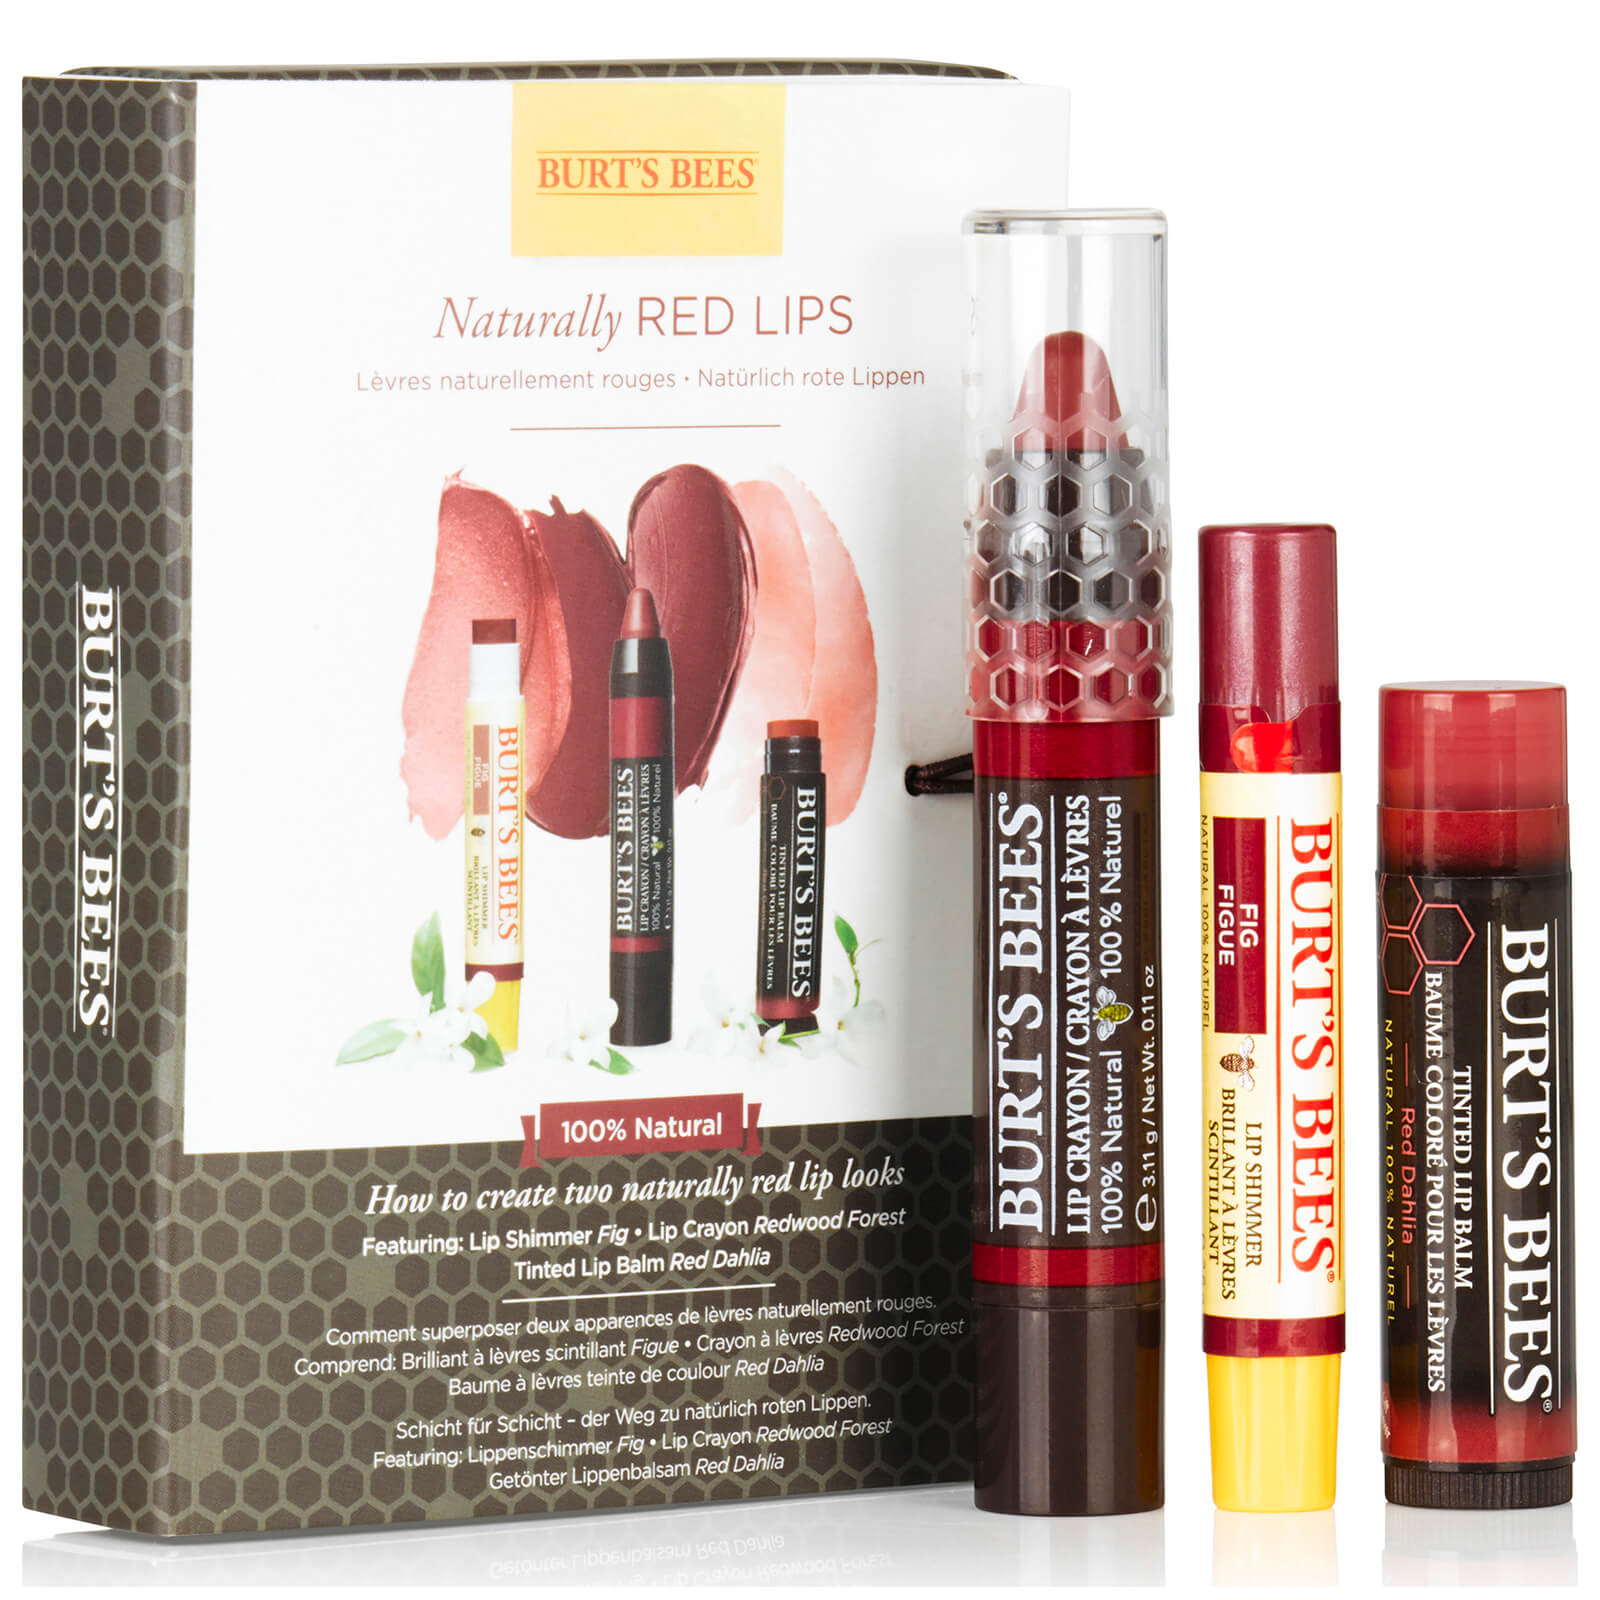 Burt's Bees Naturally Red Lips Gift Set